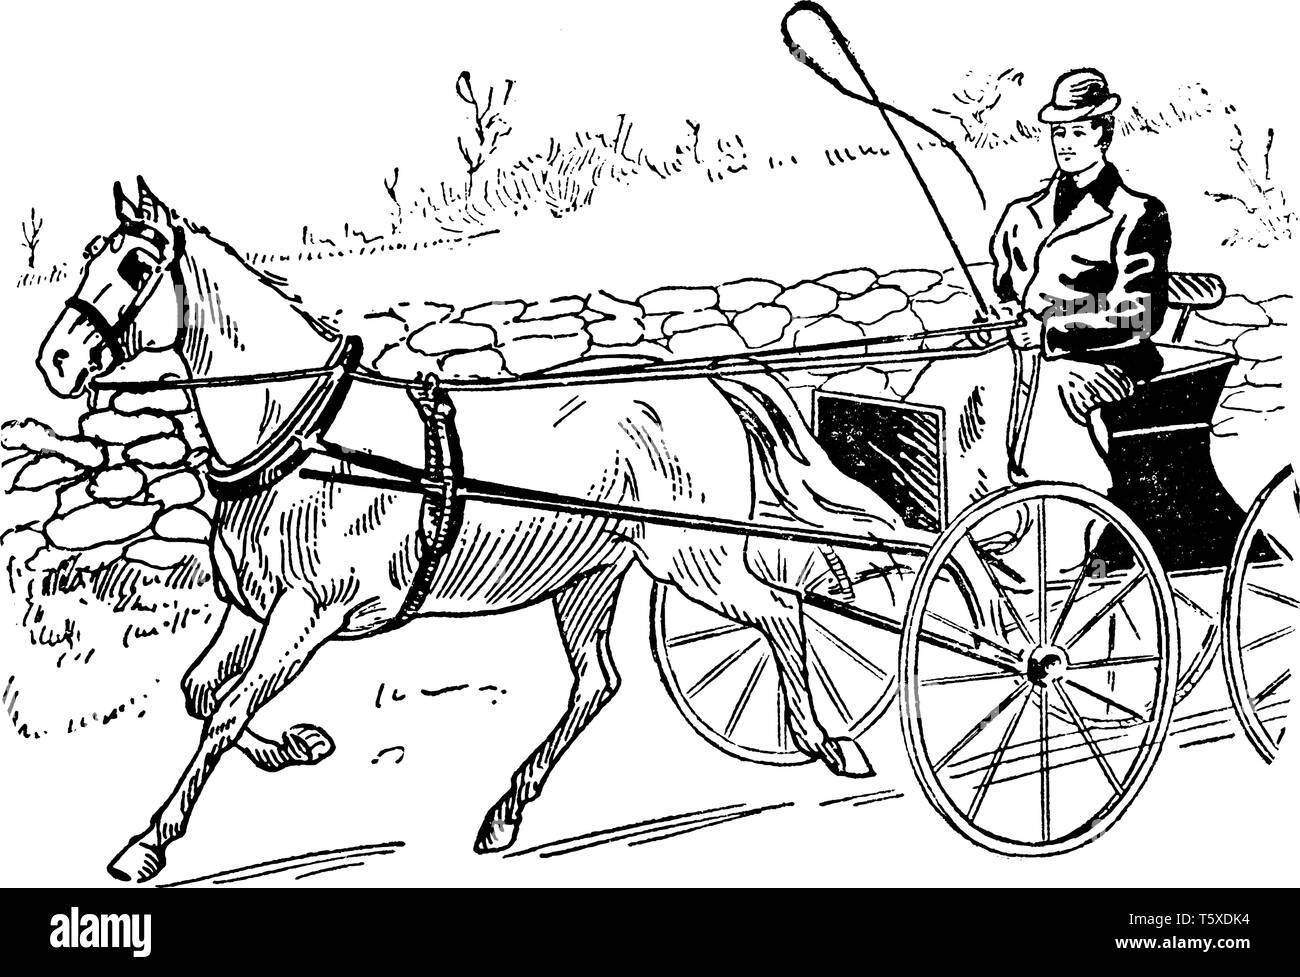 Kutsche, wo eine Kutsche von einem erwachsenen Mann angetrieben, vintage Strichzeichnung oder Gravur Abbildung. Stock Vektor